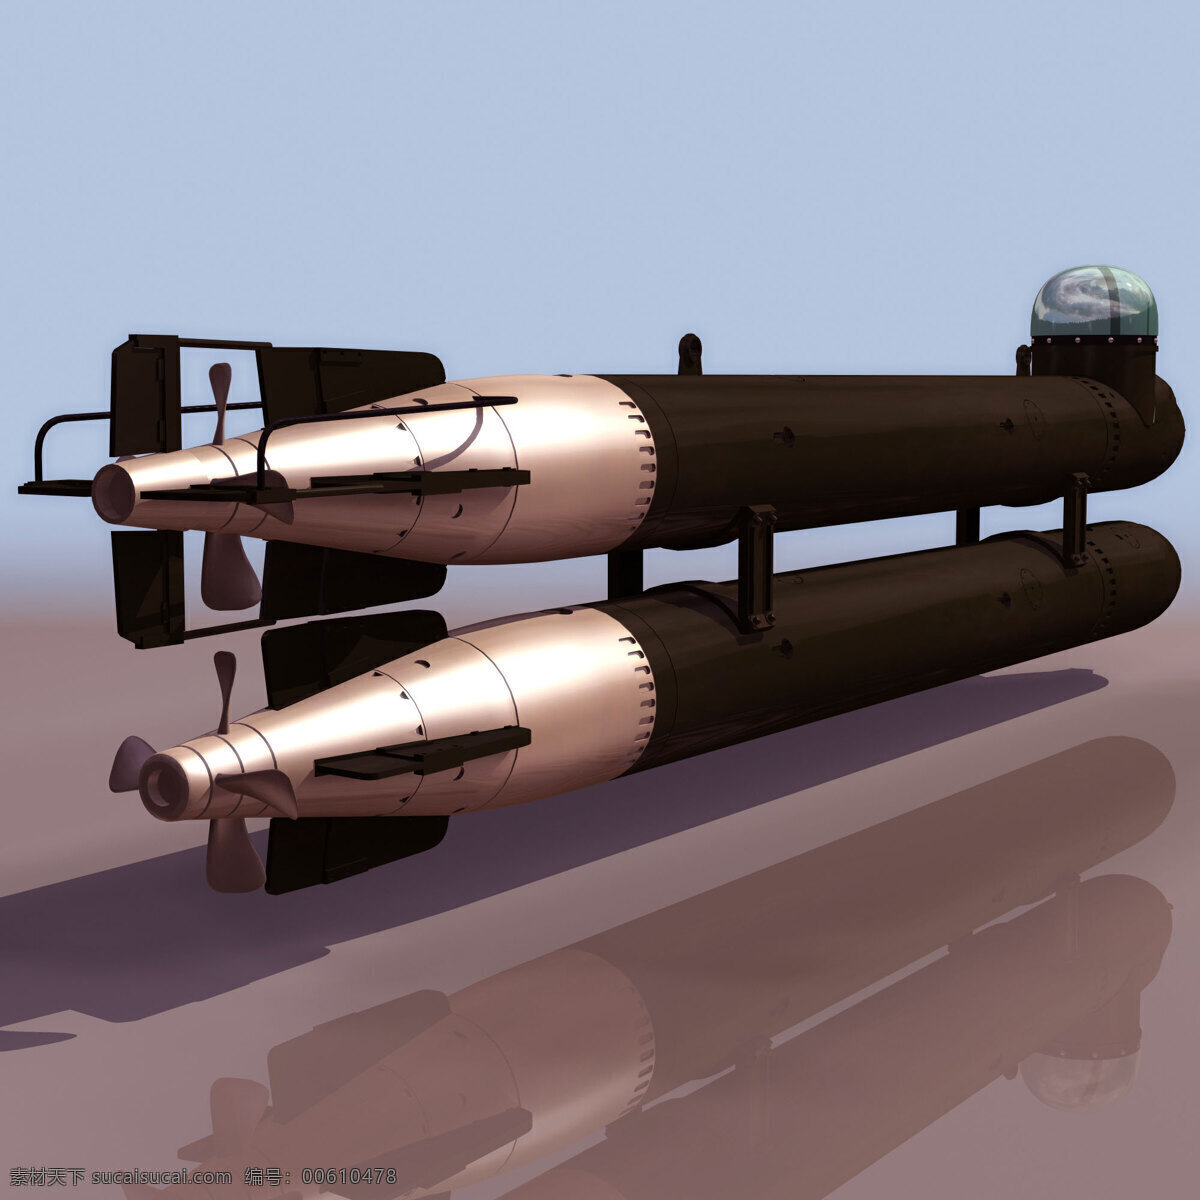 潜水艇 模型 neger 军事模型 潜水艇模型 海军武器库 3d模型素材 其他3d模型